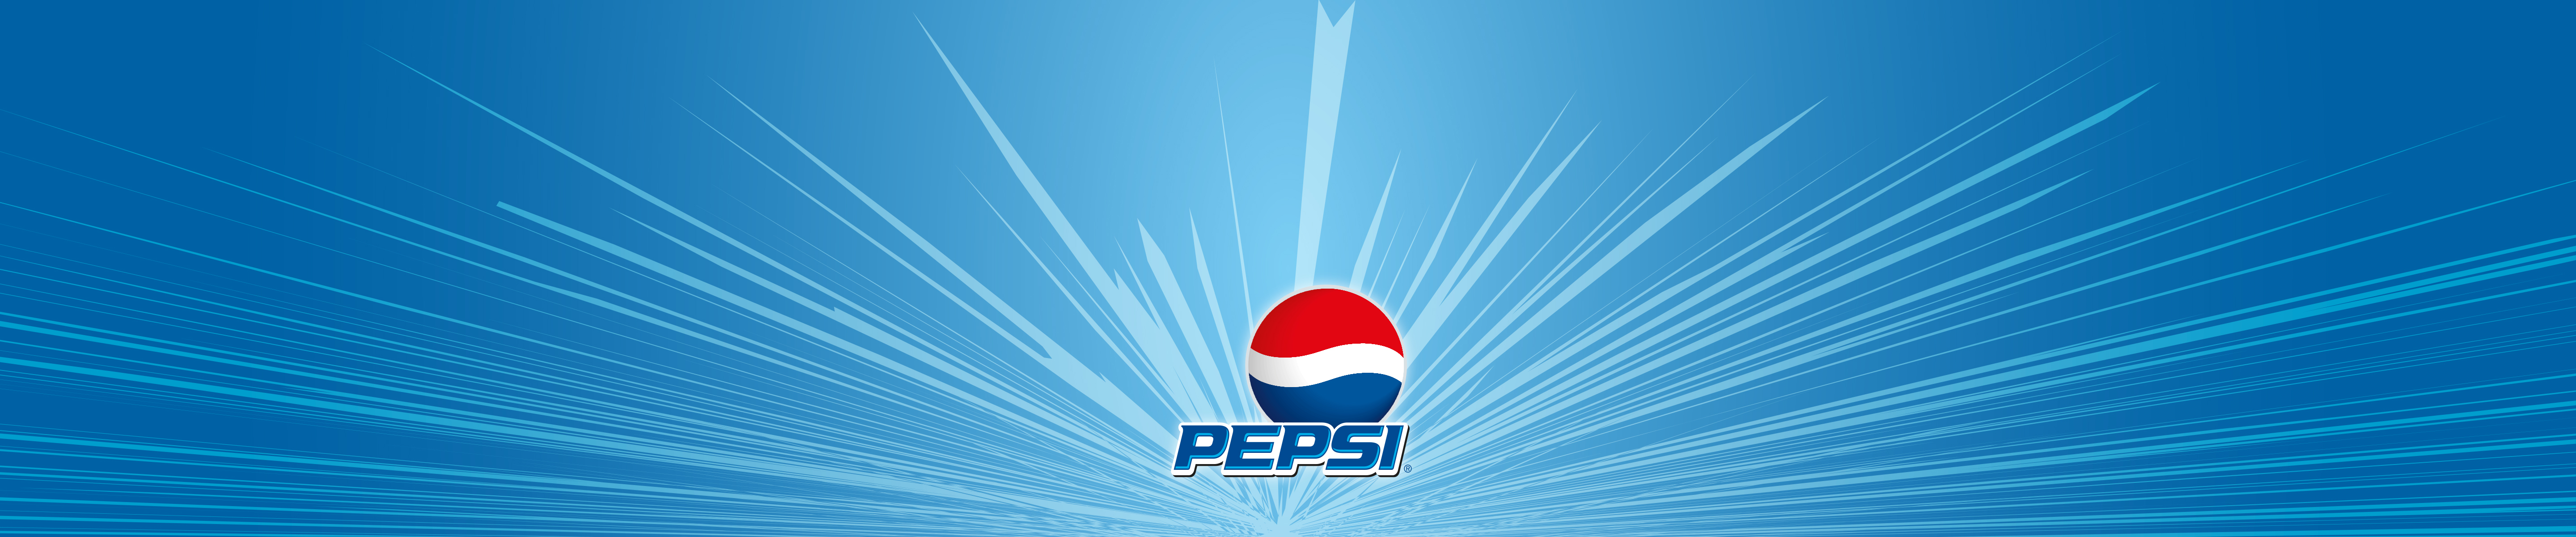 Pepsi Jpg